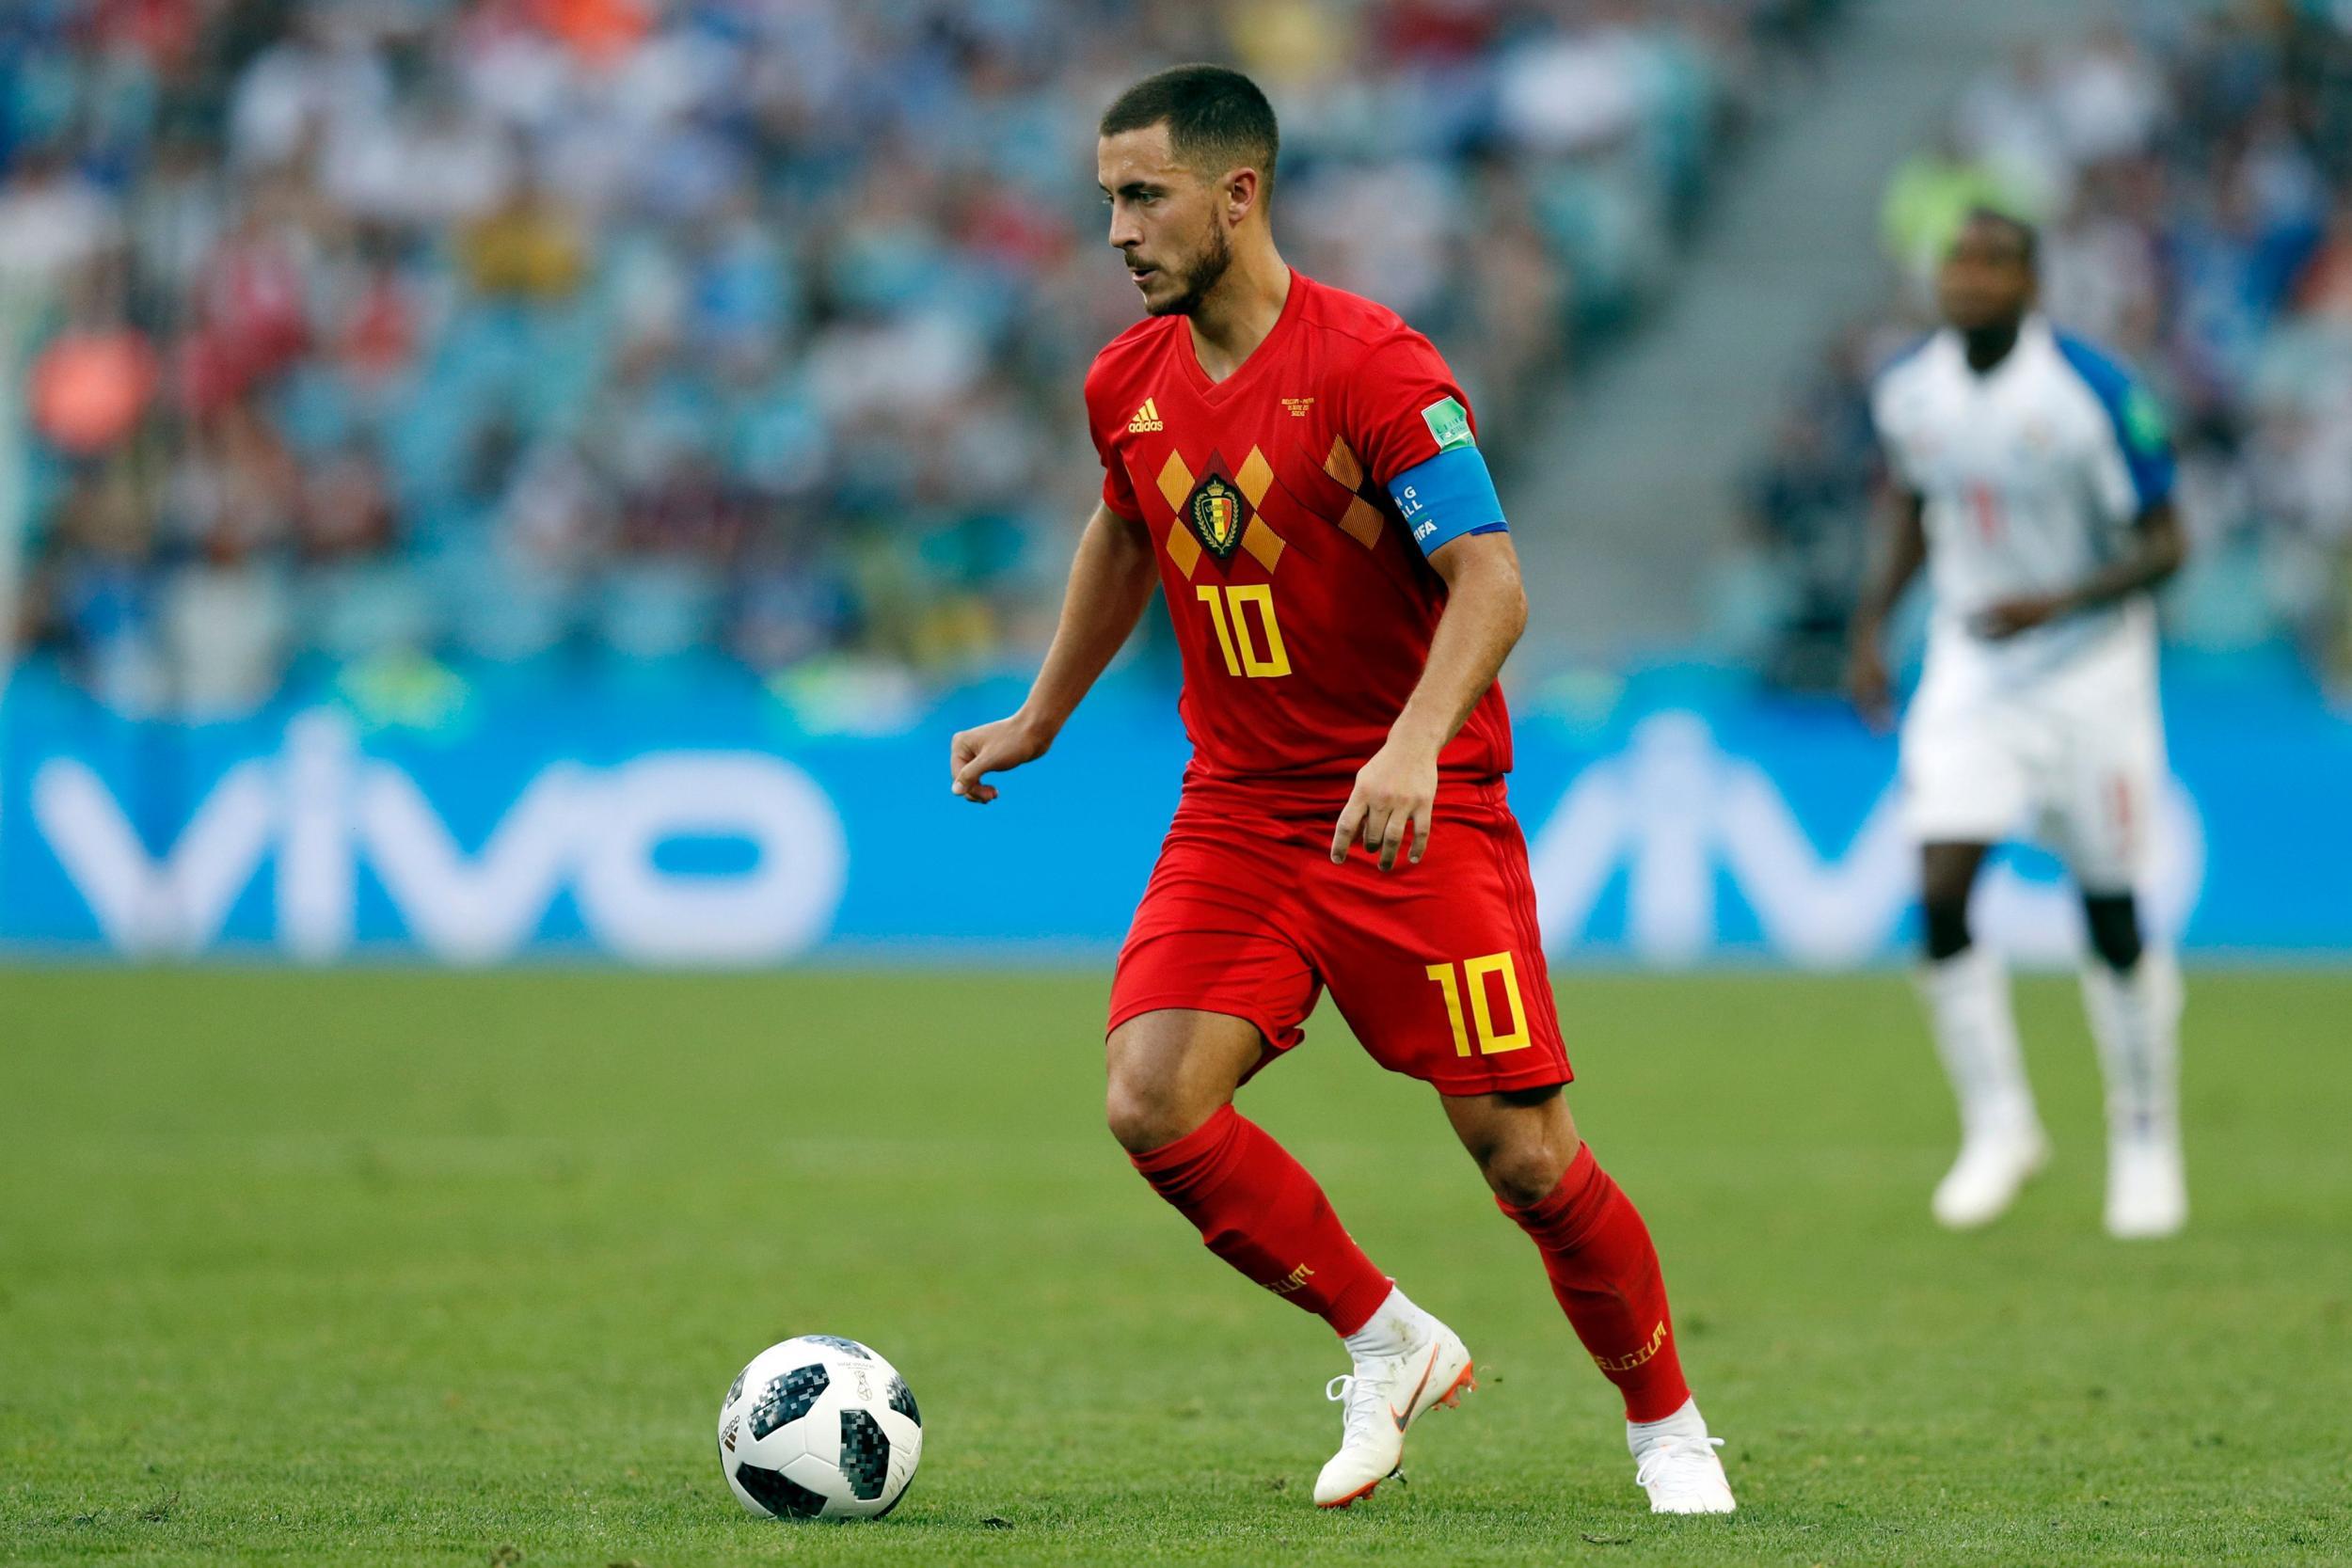 World Cup 2018: Eden Hazard warns Belgium's best is still to come